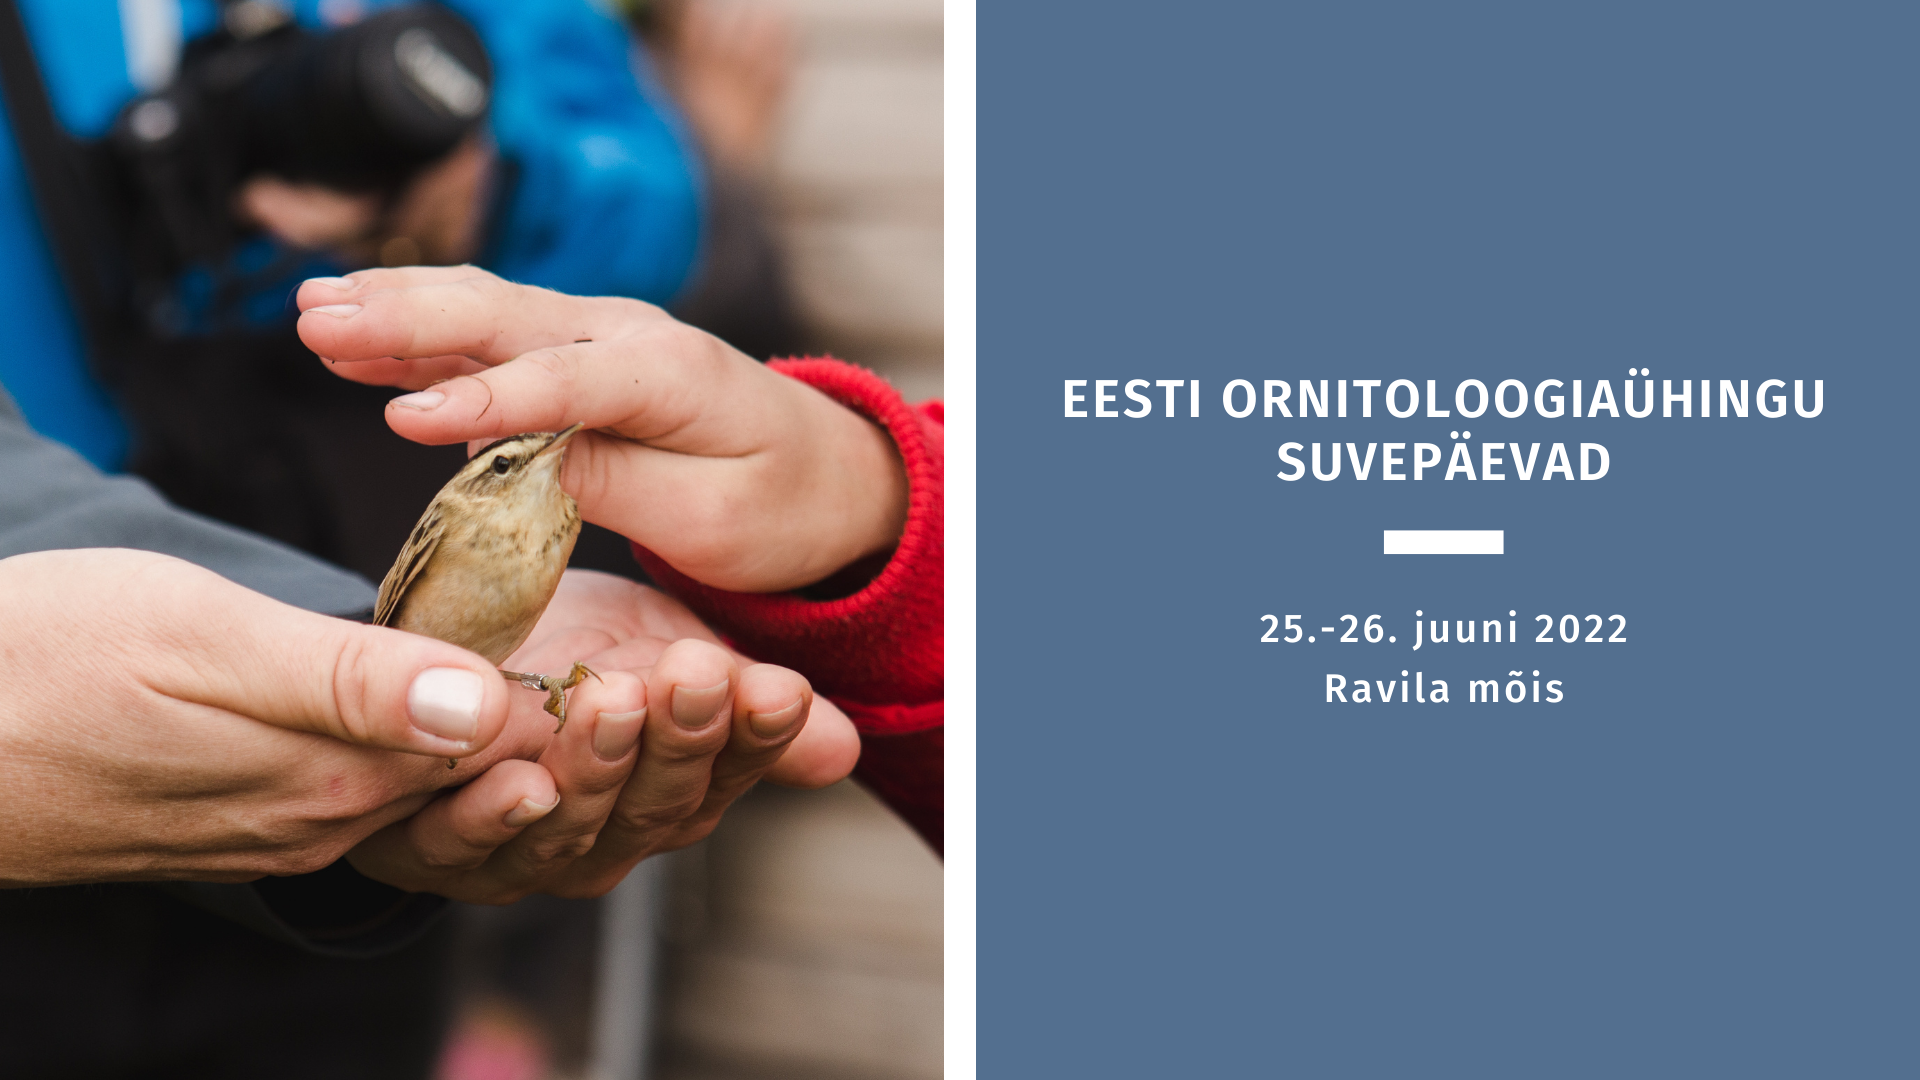 Eesti Ornitoloogiaühingu suvepäevade plakat, fotol lind peopesas